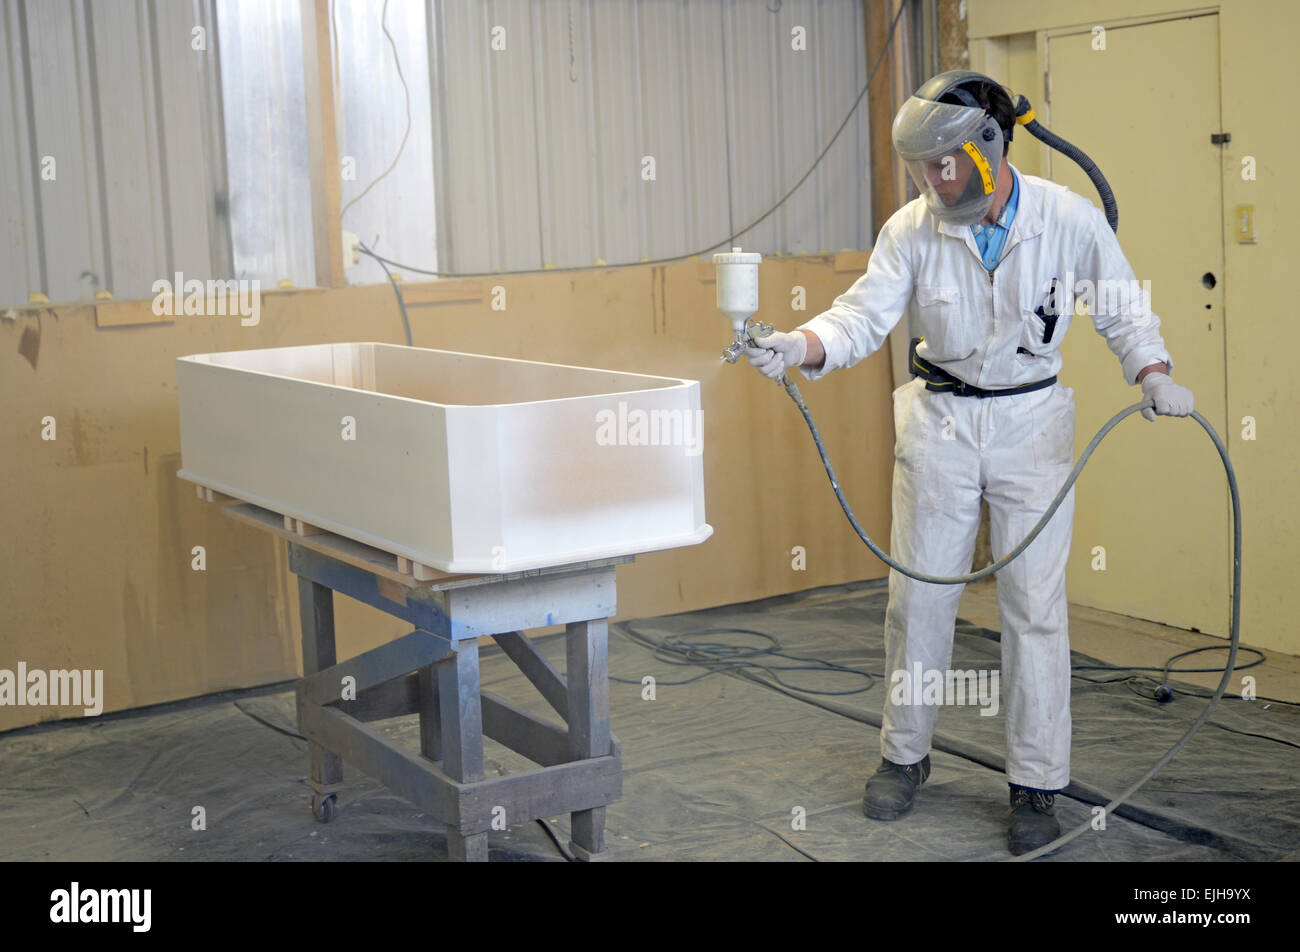 Un comerciante Barnicez Spray un ataúd en una cabina de pulverización Foto de stock